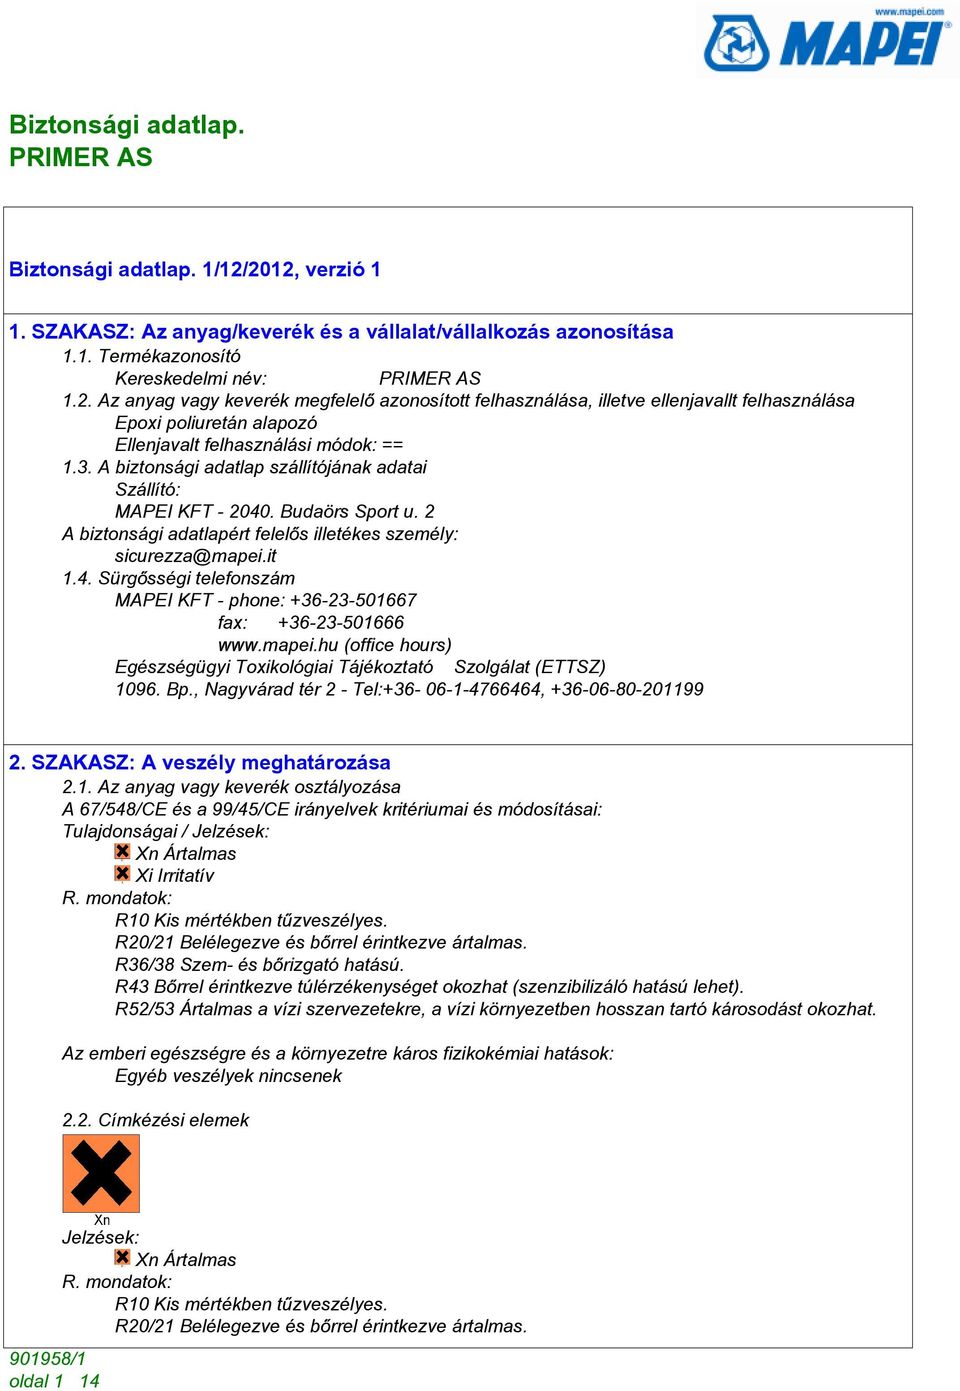 mapei.hu (office hours) Egészségügyi Toxikológiai Tájékoztató Szolgálat (ETTSZ) 10